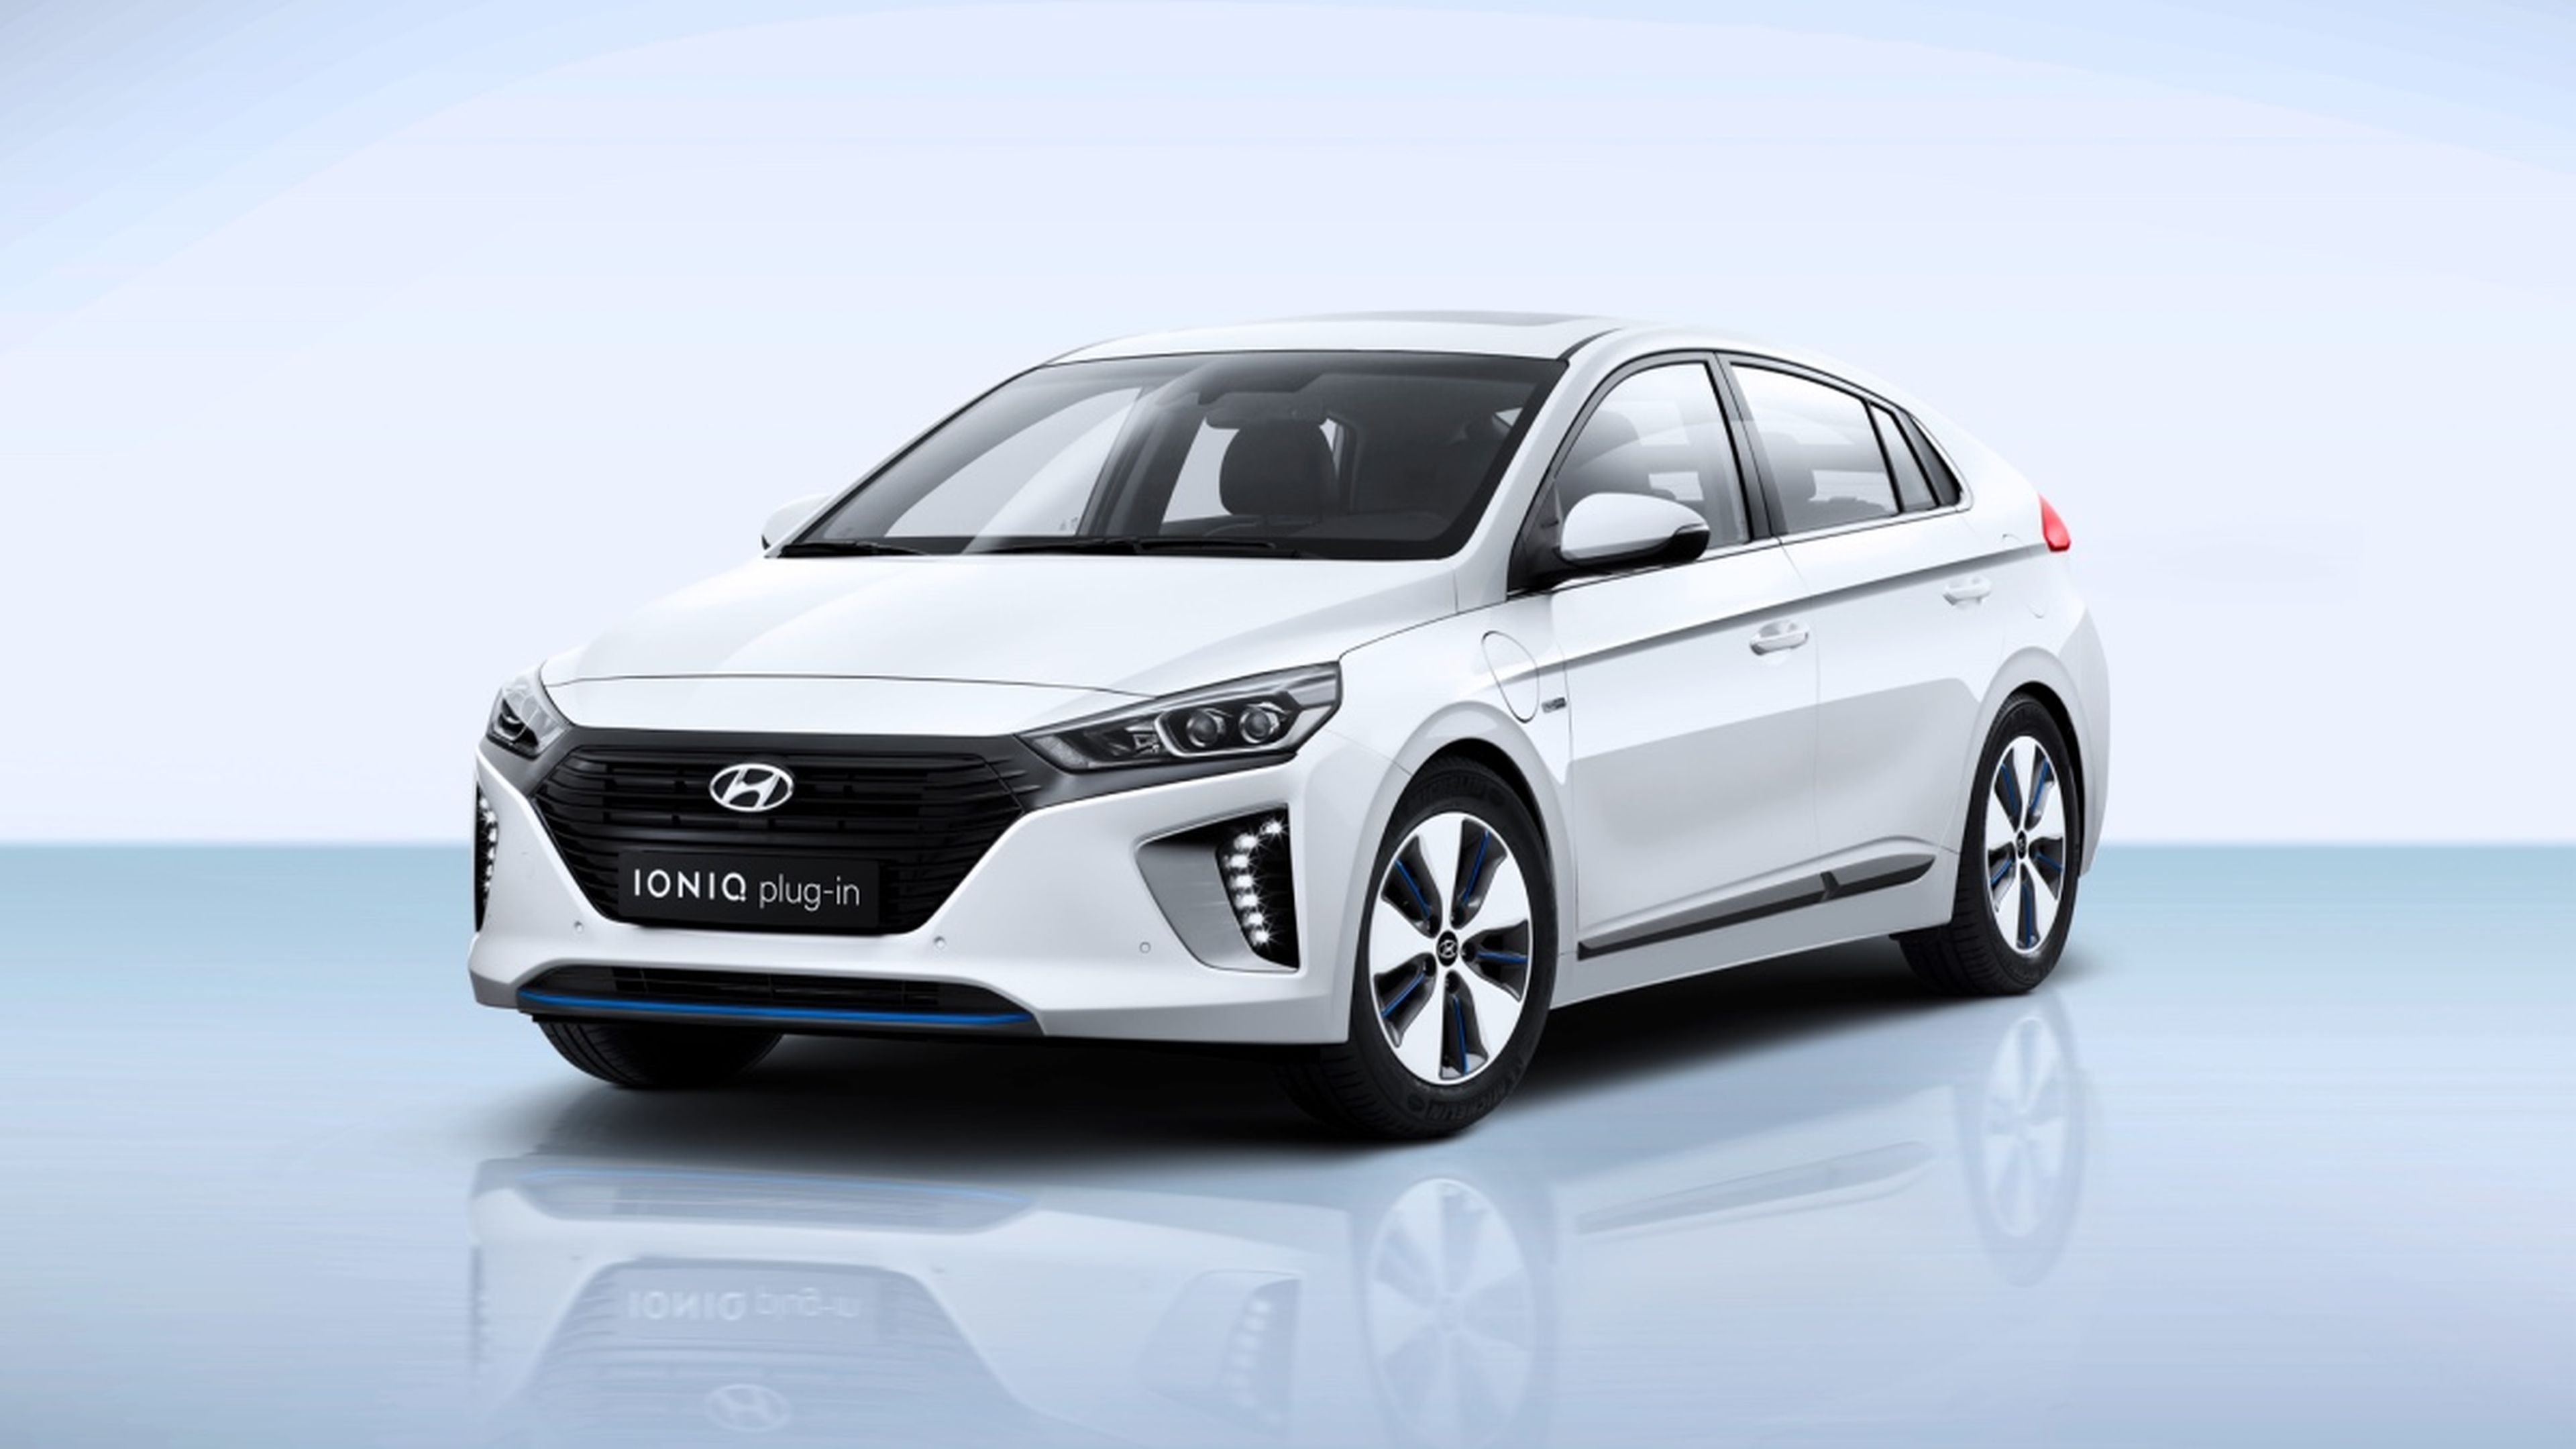 En el exterior, el Hyundai Ioniq plug-in no se diferencia de sus hermanos de gama